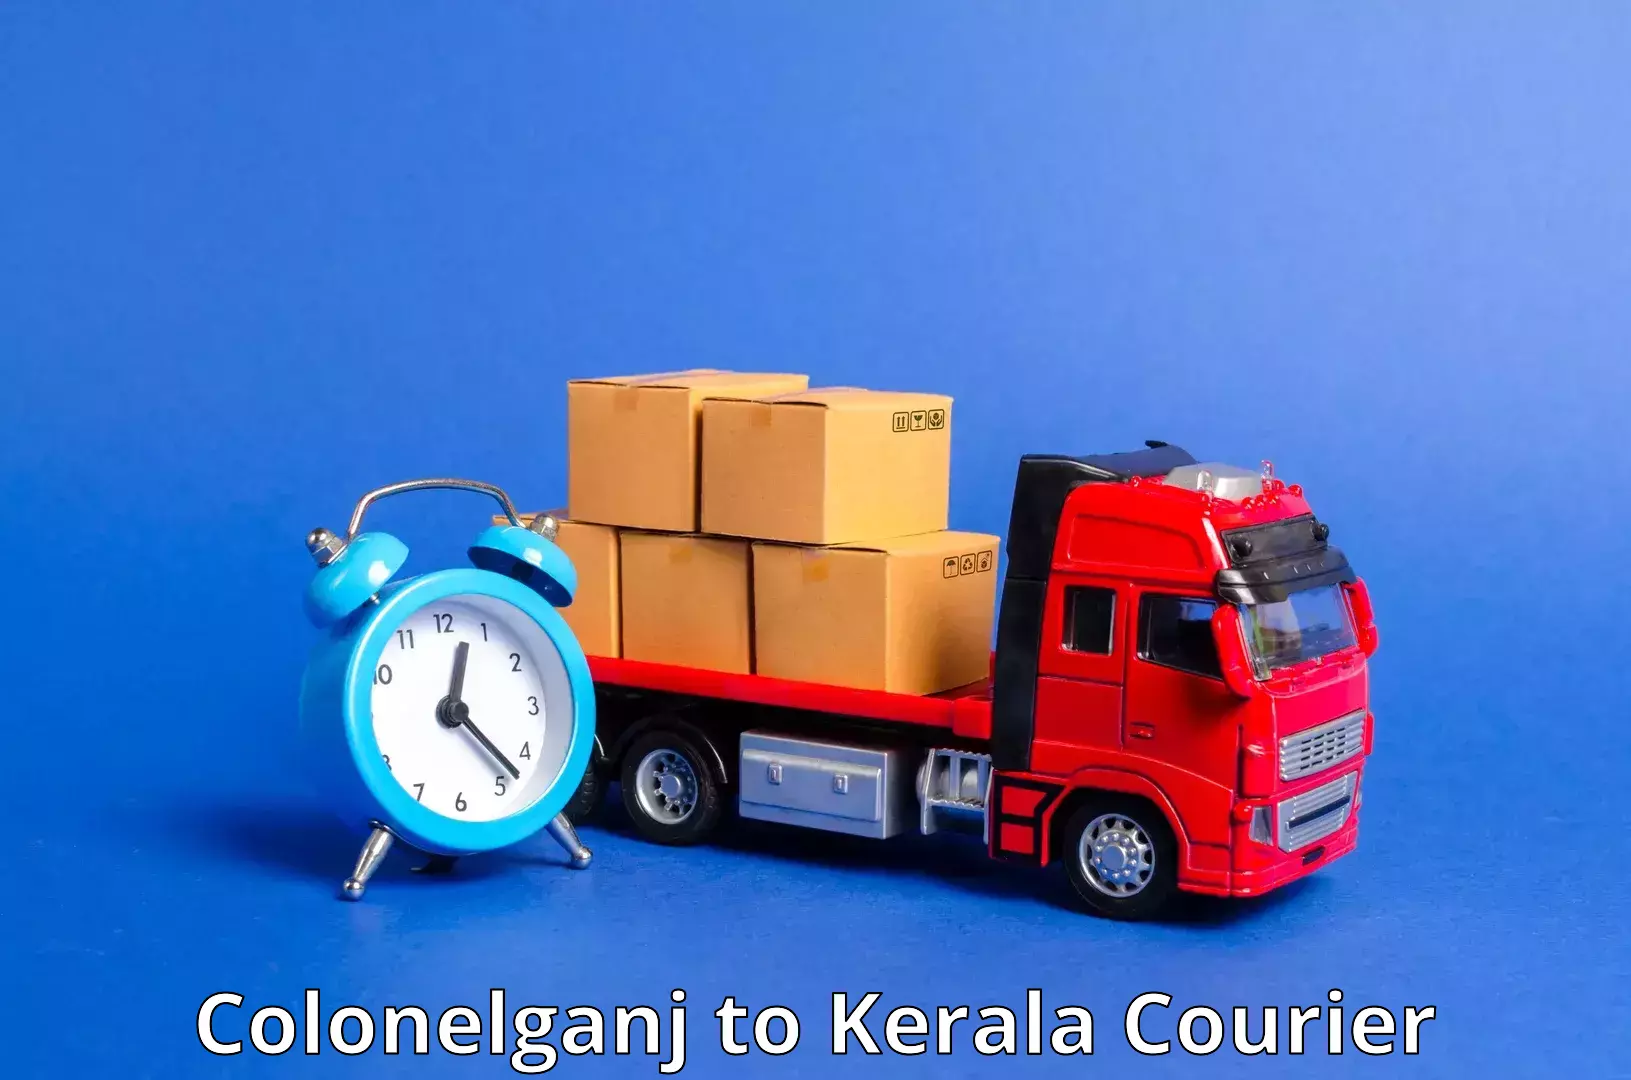 Specialized shipment handling Colonelganj to IIIT Kottayam